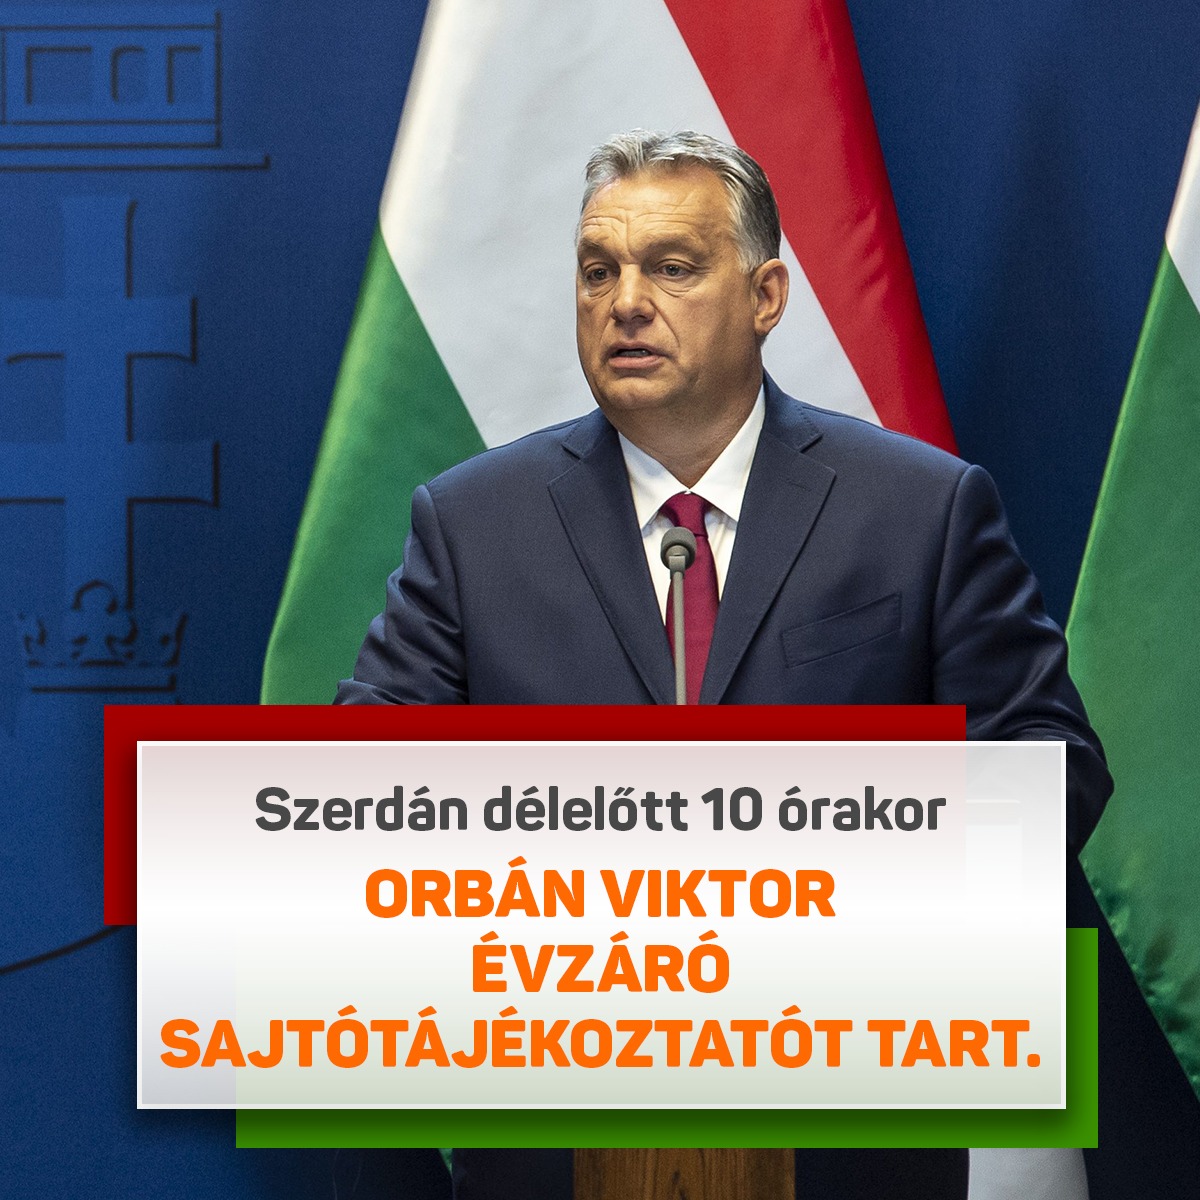 Orbán Viktor részt vesz a mai Kormányinfón, értékeli az elmúlt évet, stratégiai képet vázol fel a Magyarország előtt álló kihívásokról, majd a hazai és külföldi újságírók kérdéseire válaszol.